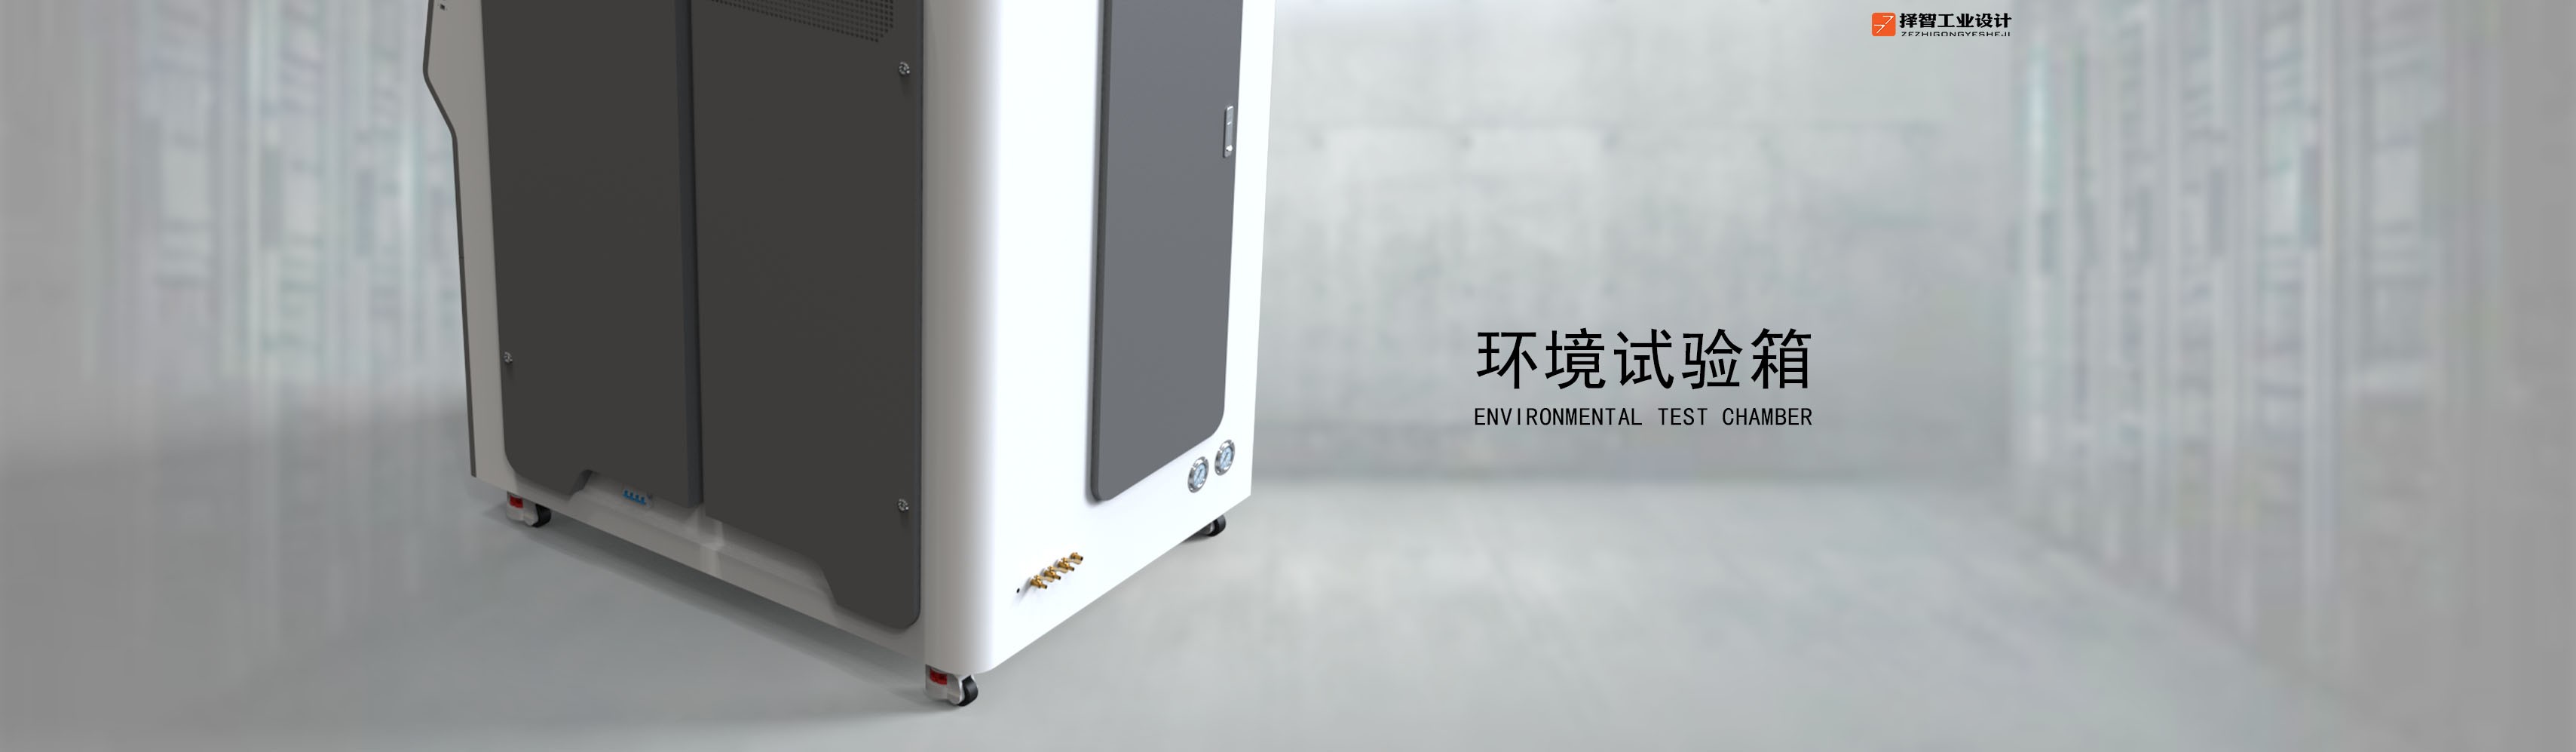 上海苏州产品设计工业产品外观设计结构设计环境试验箱